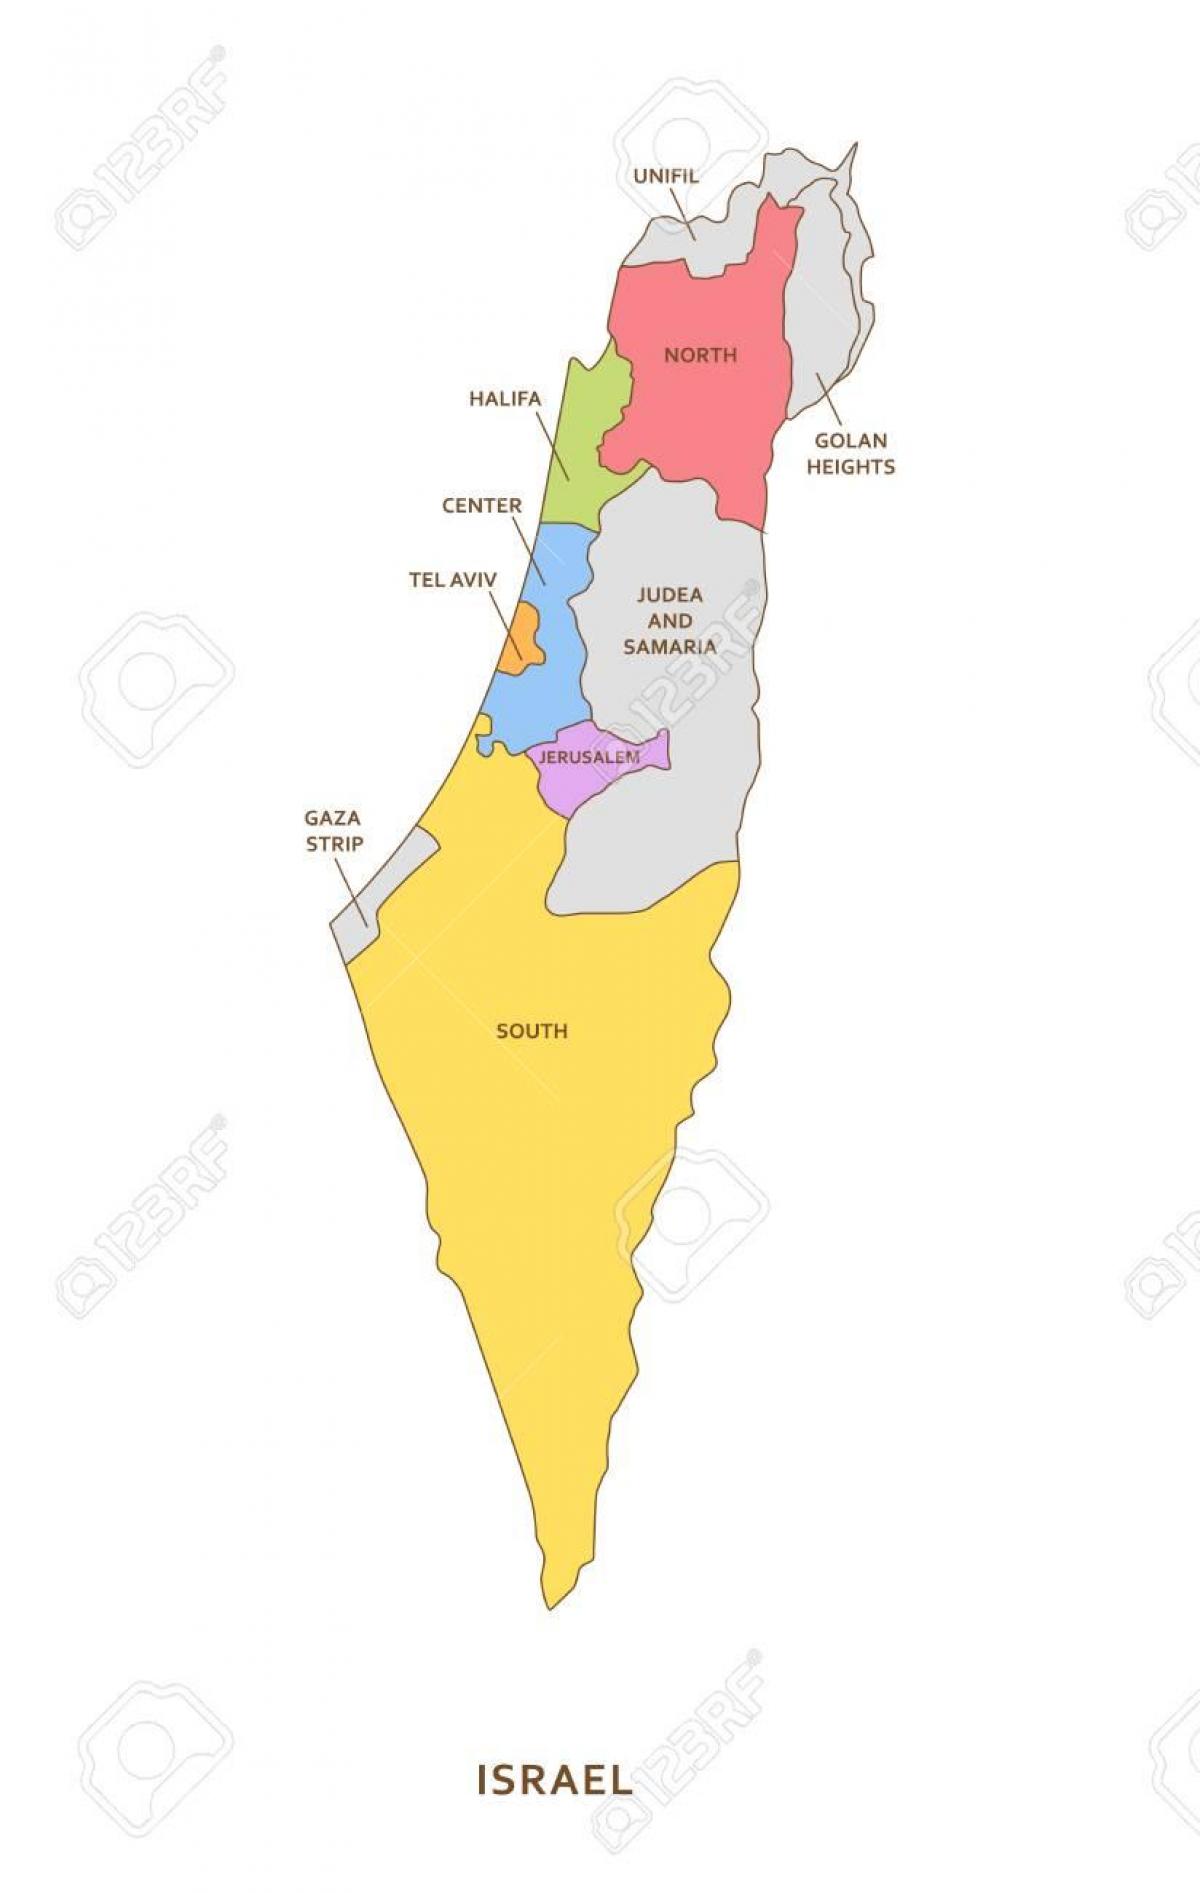 Mapa de las zonas de Israel